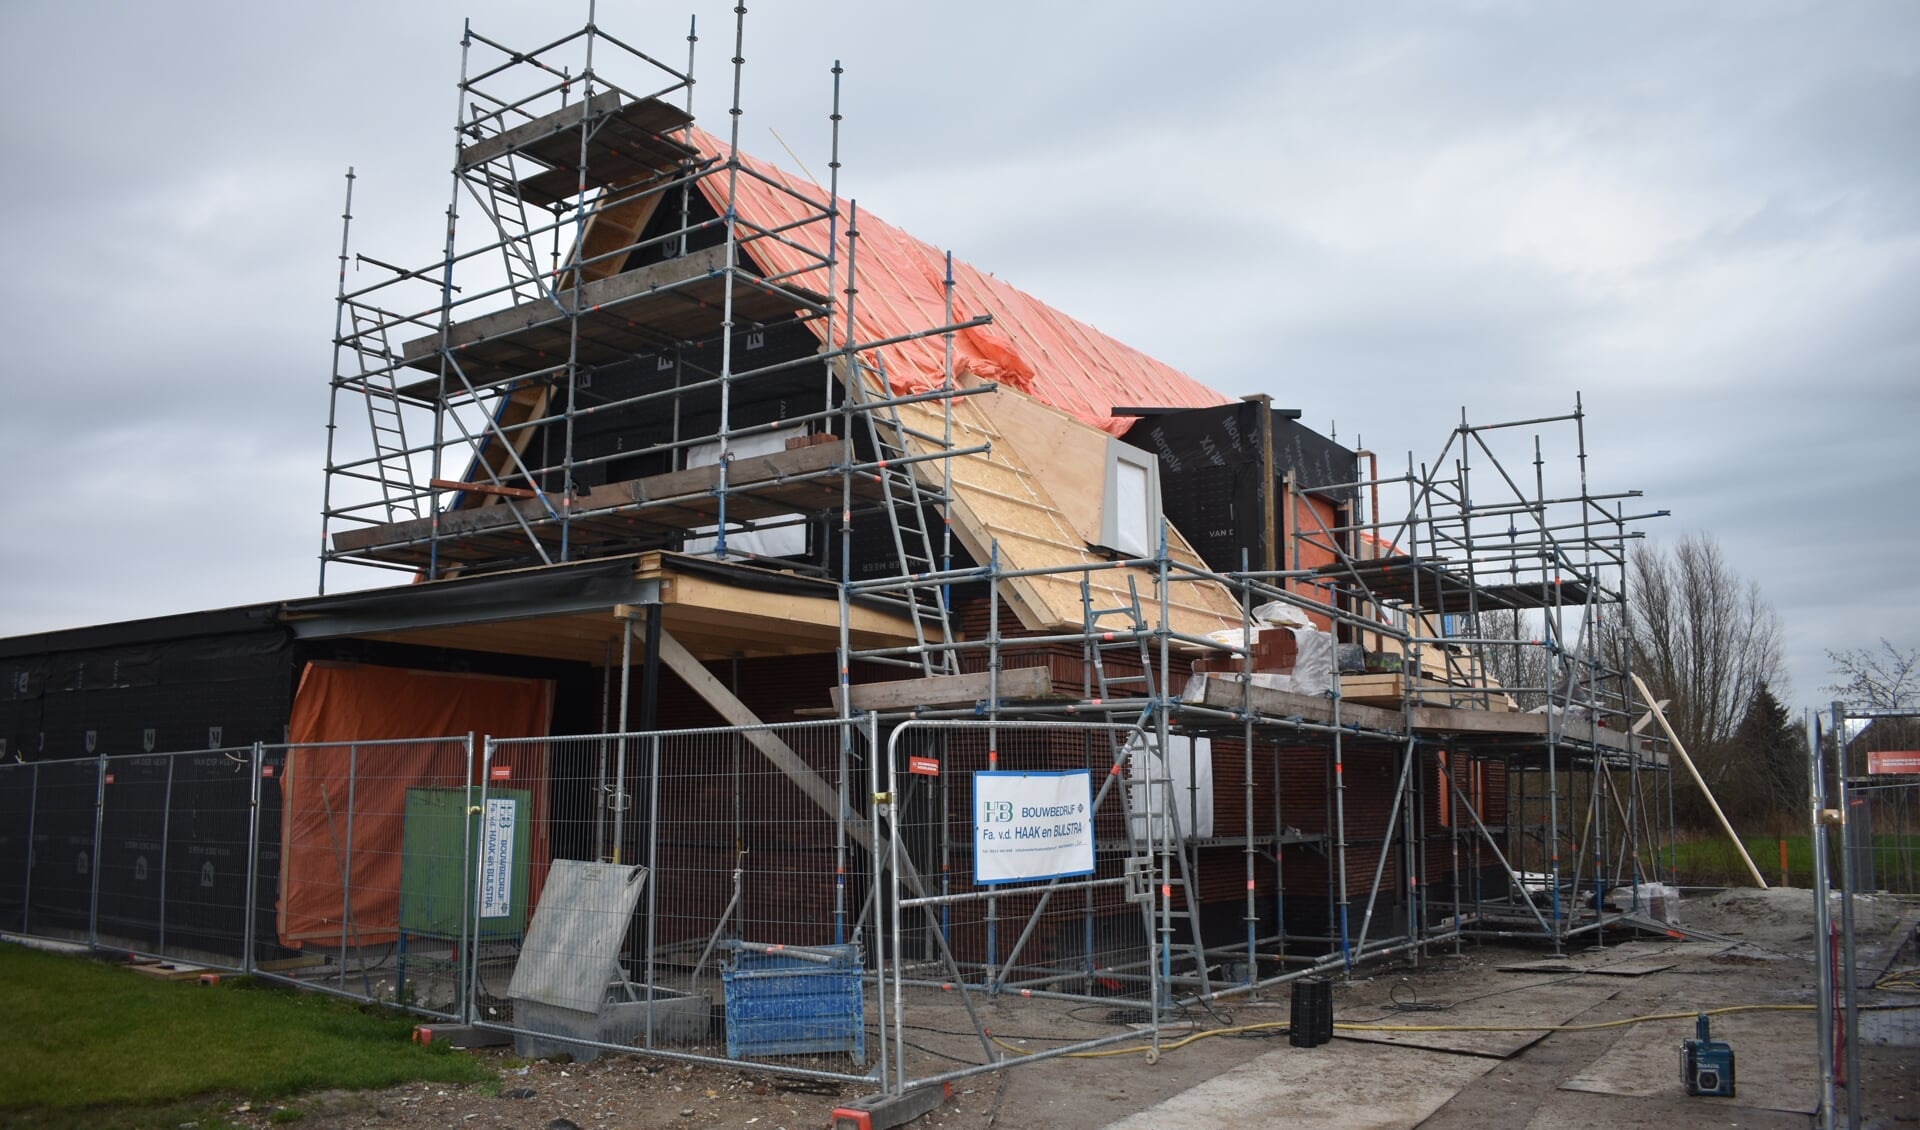 Nieuwbouw in Kollum, waar nieuwe woningen snel verkocht worden. Volgens Werkgroep 2030 kan het dorp verder groeien.